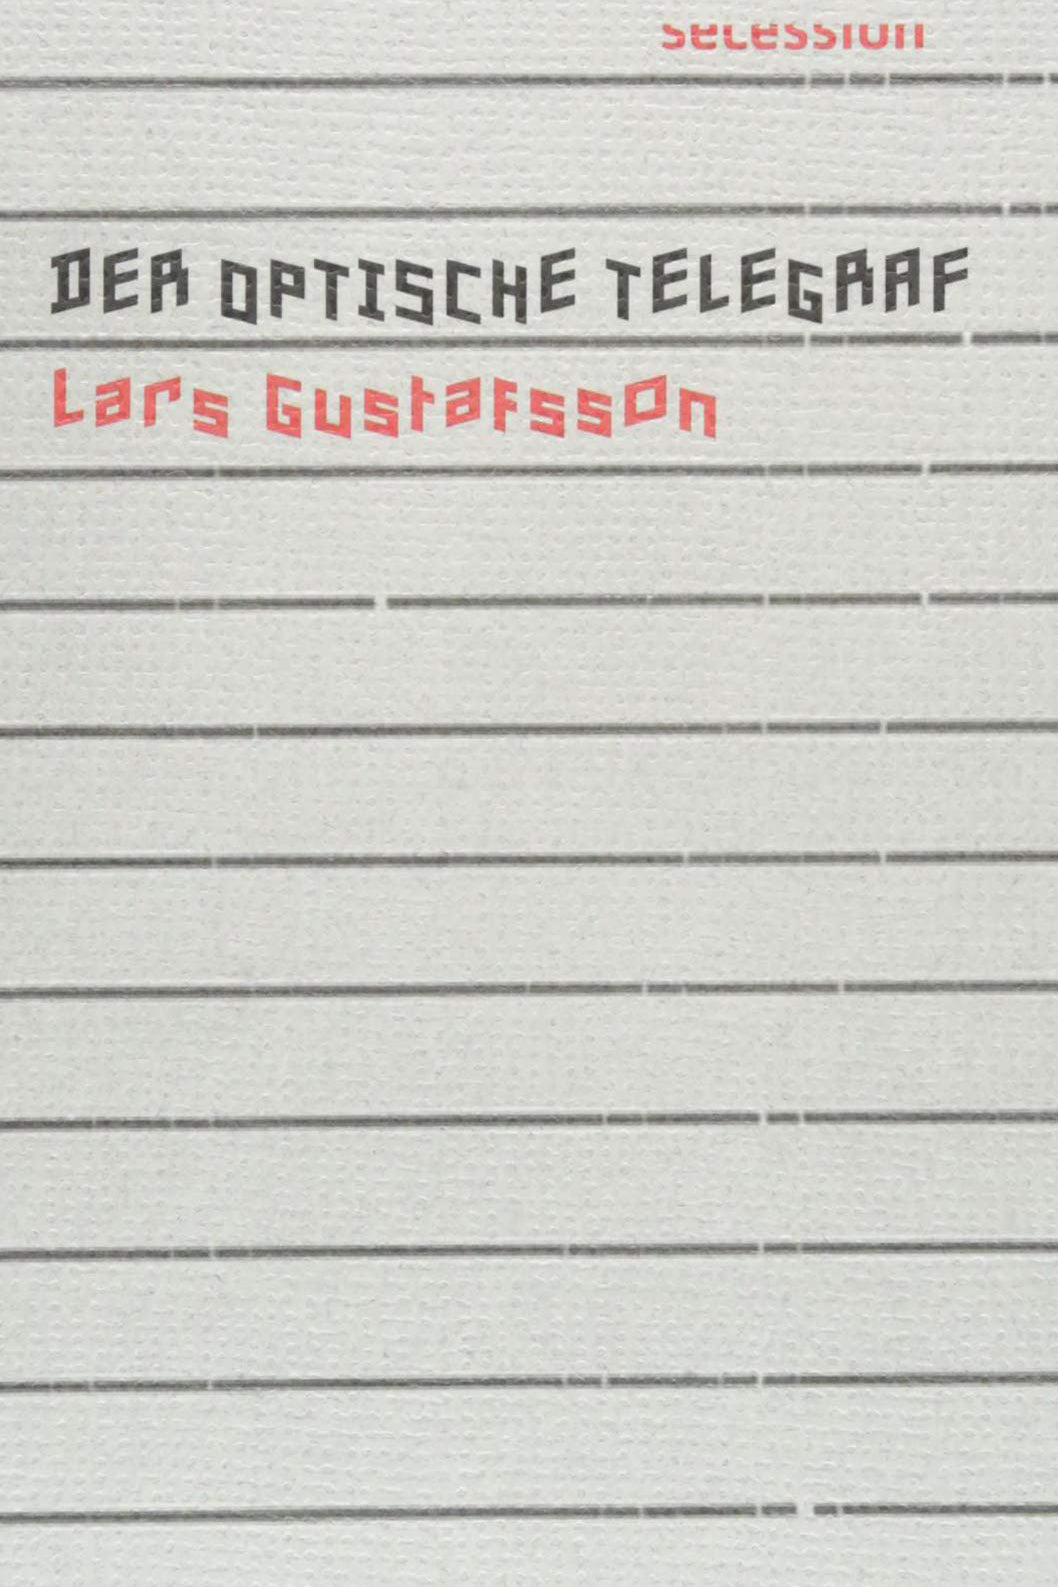 Der optische Telegraf